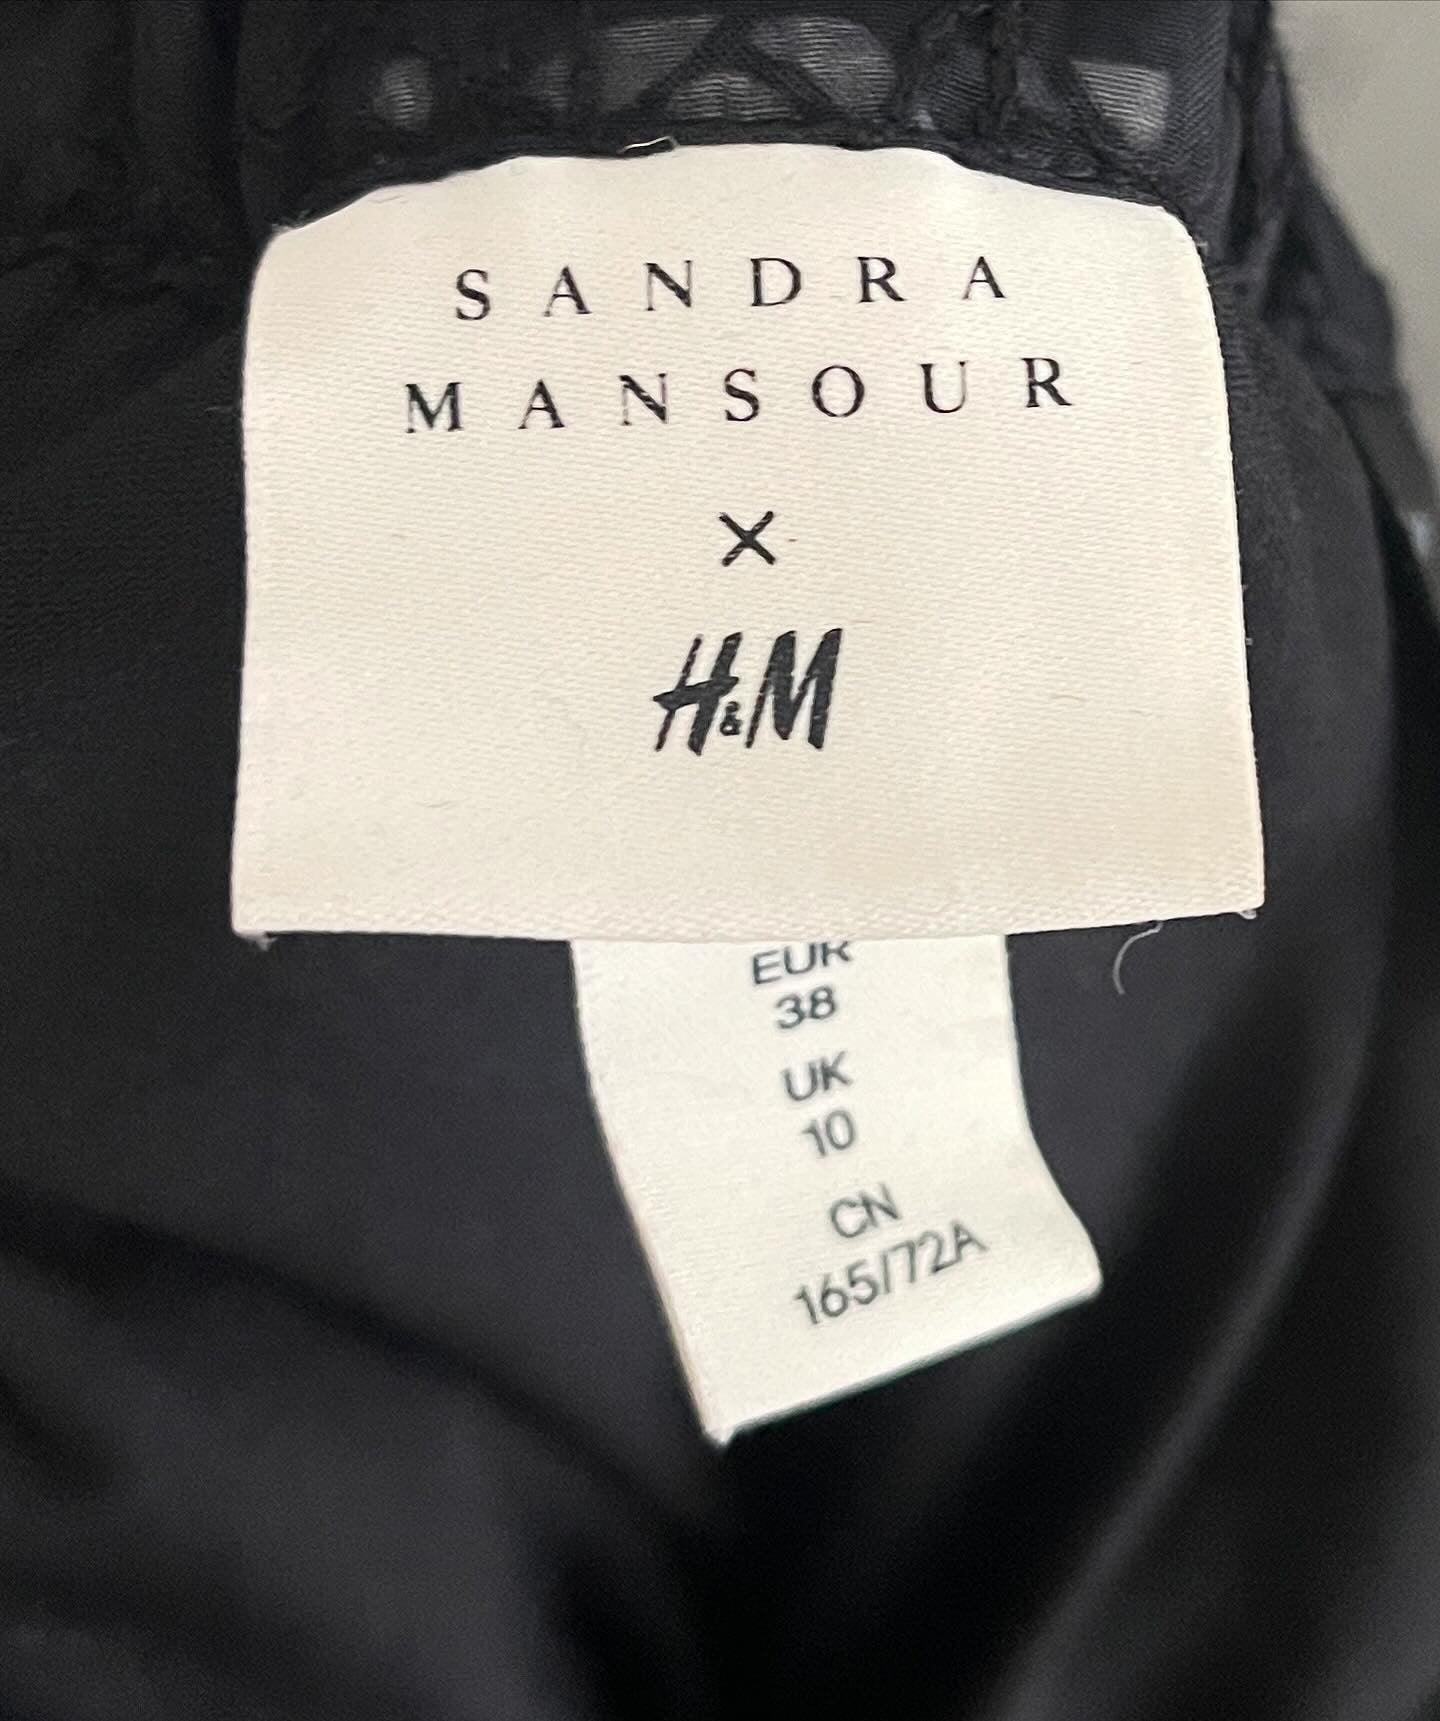 SANDRA MANSOUR x H&M - SANDRA MANSOUR x H&M Skirt - AVVIIVVA.COM